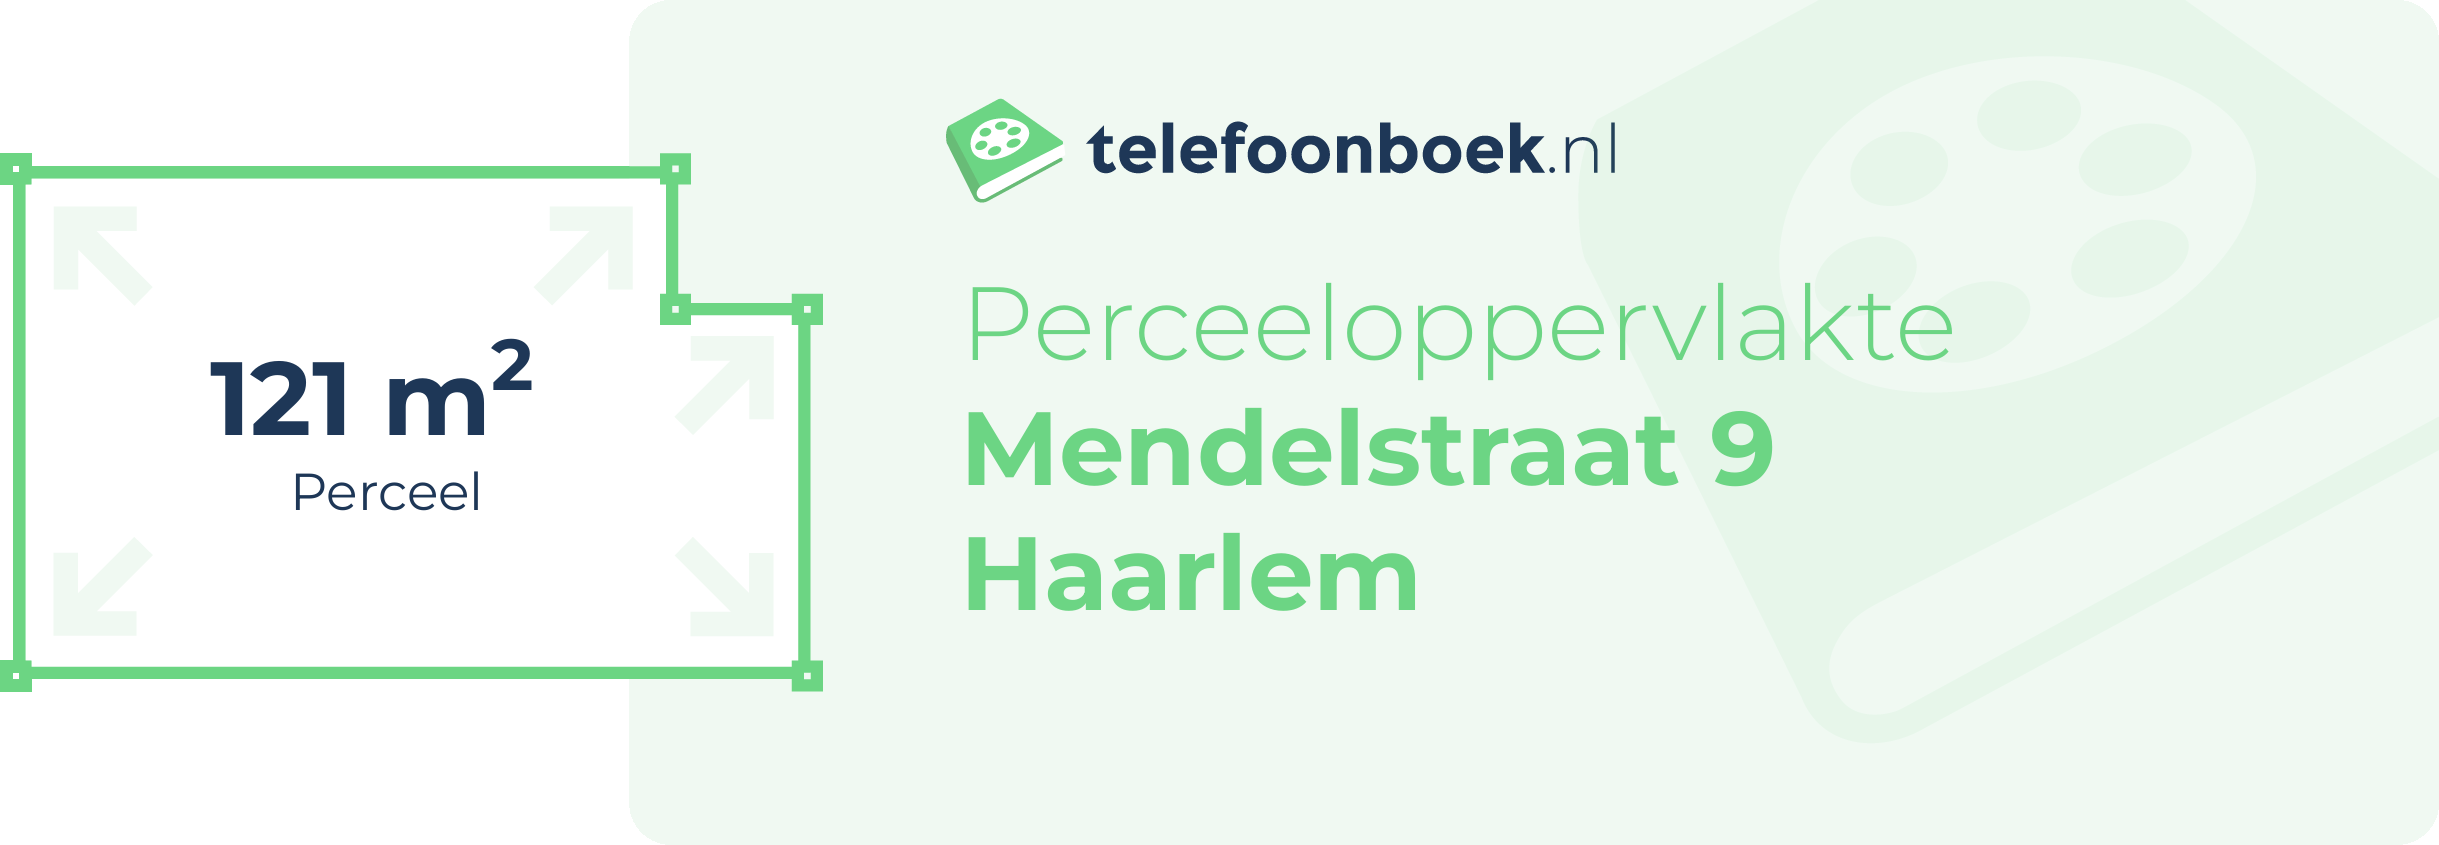 Perceeloppervlakte Mendelstraat 9 Haarlem